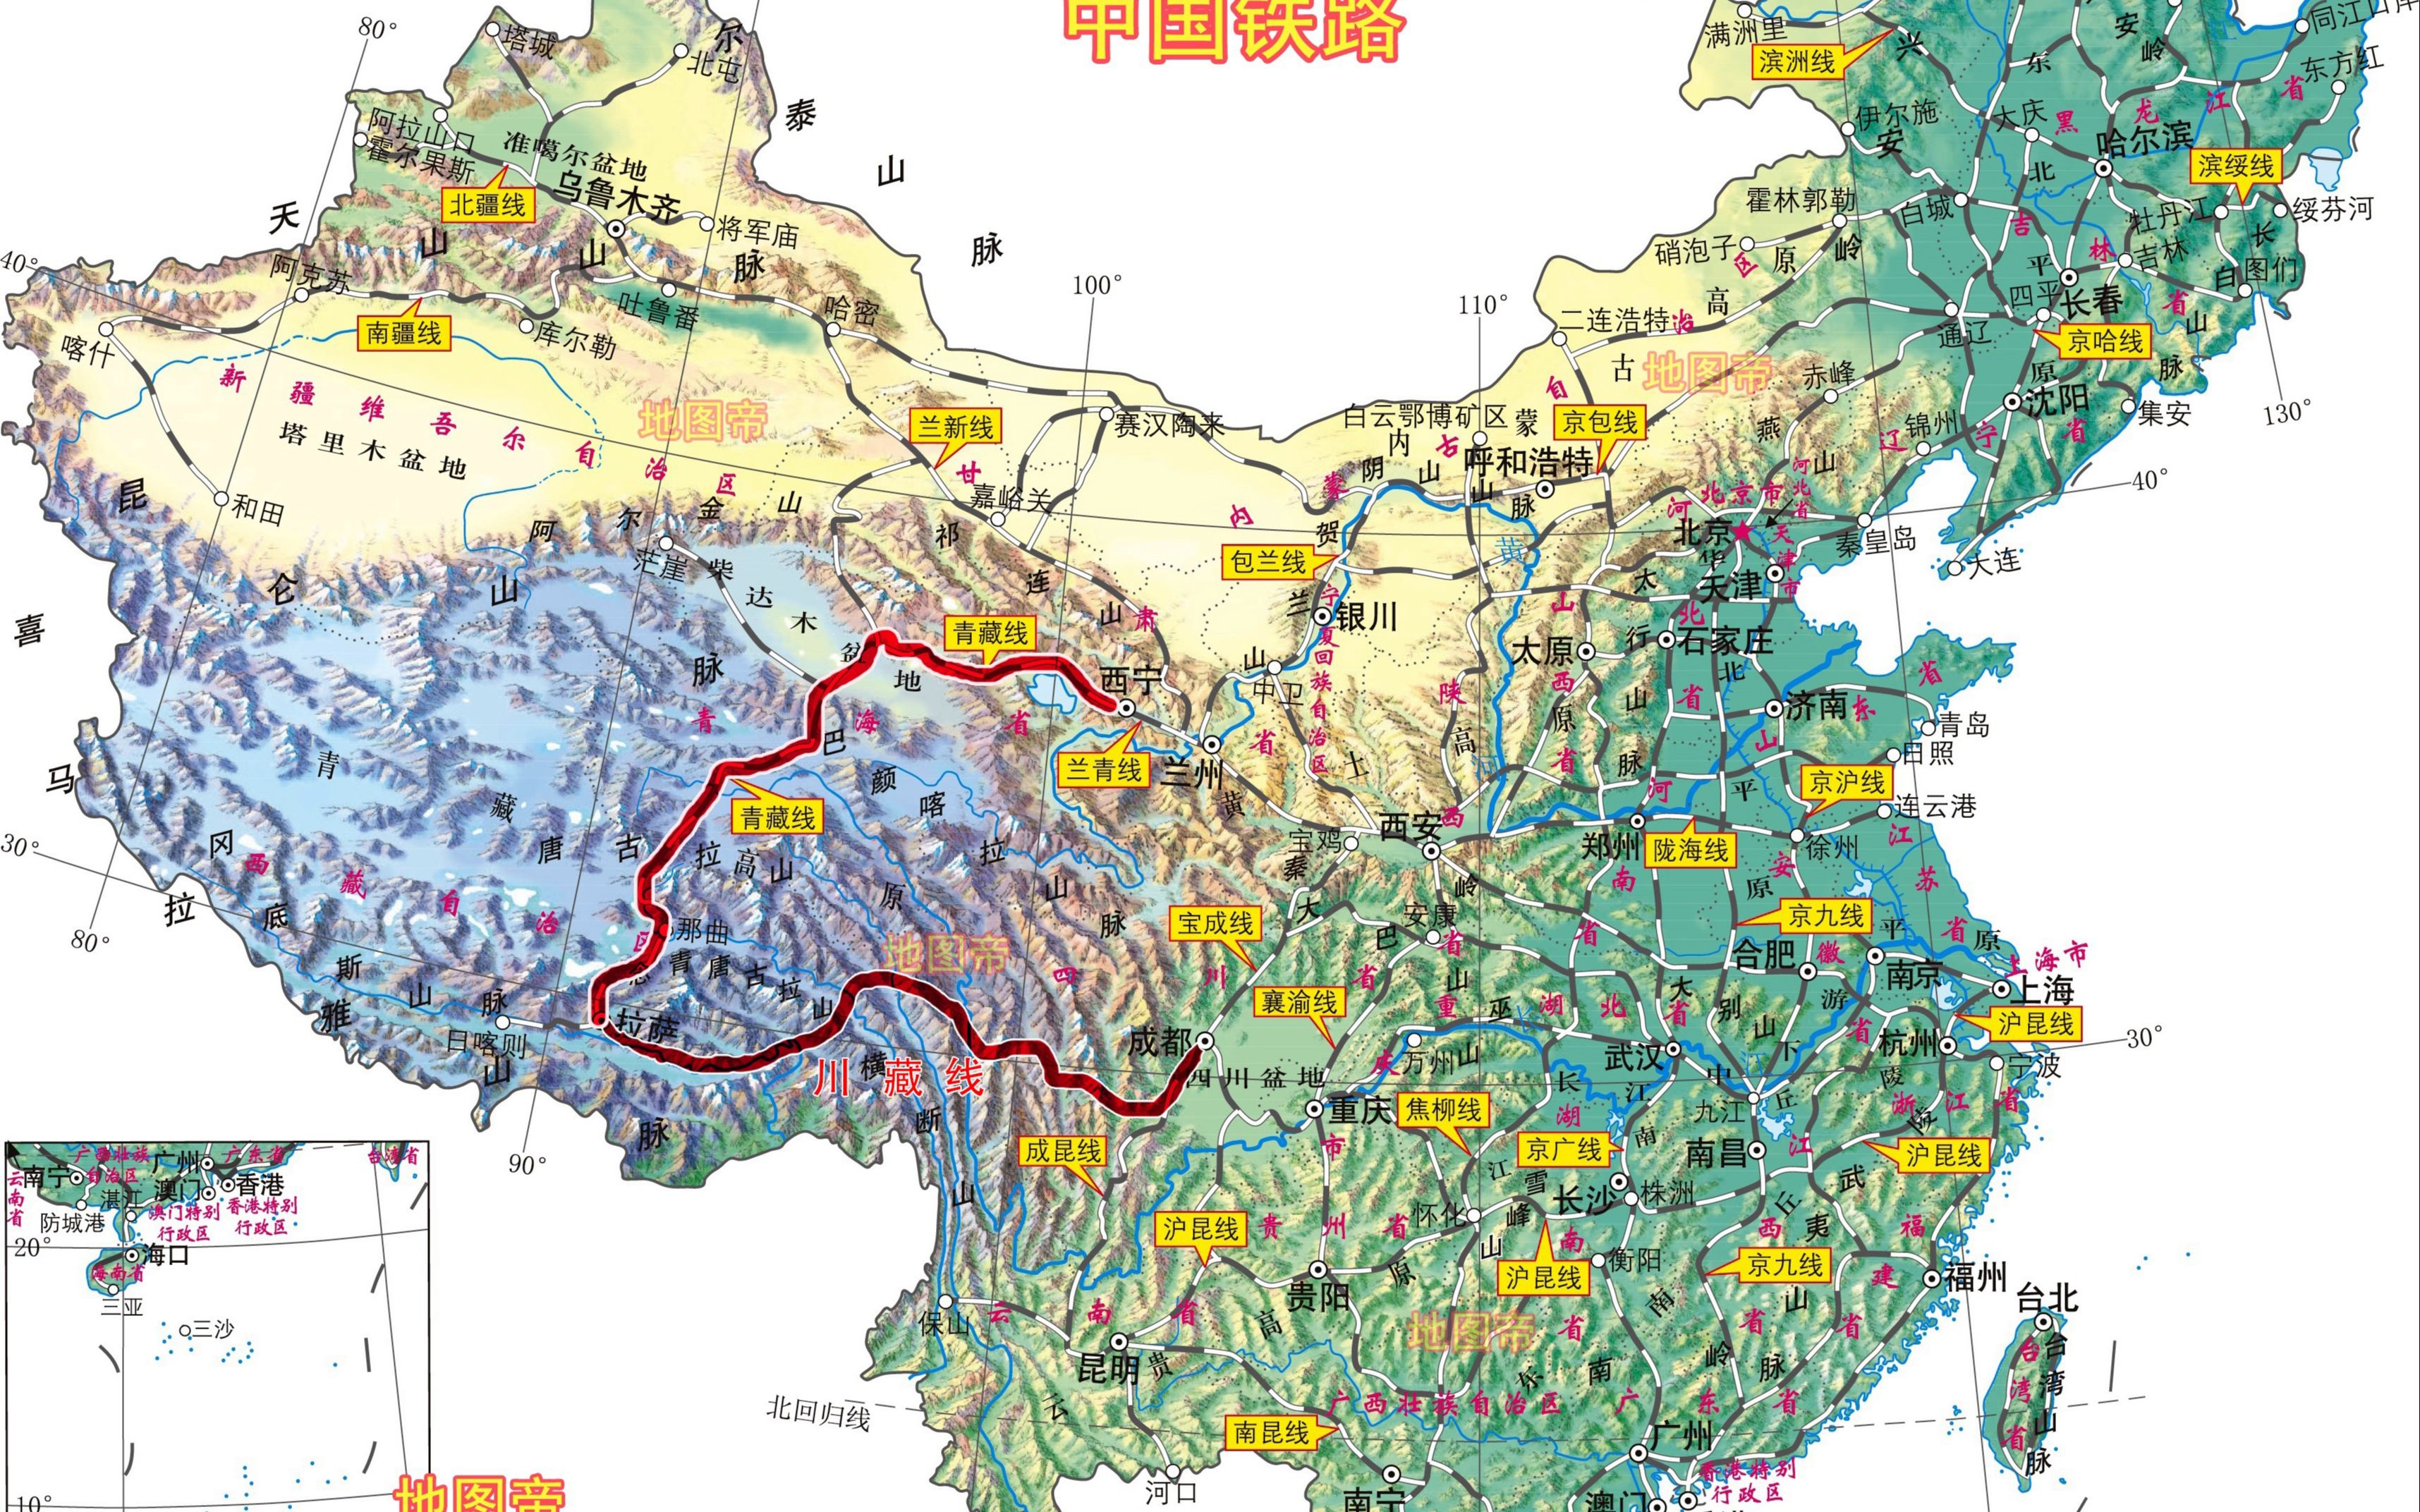 川藏铁路规划线路图图片